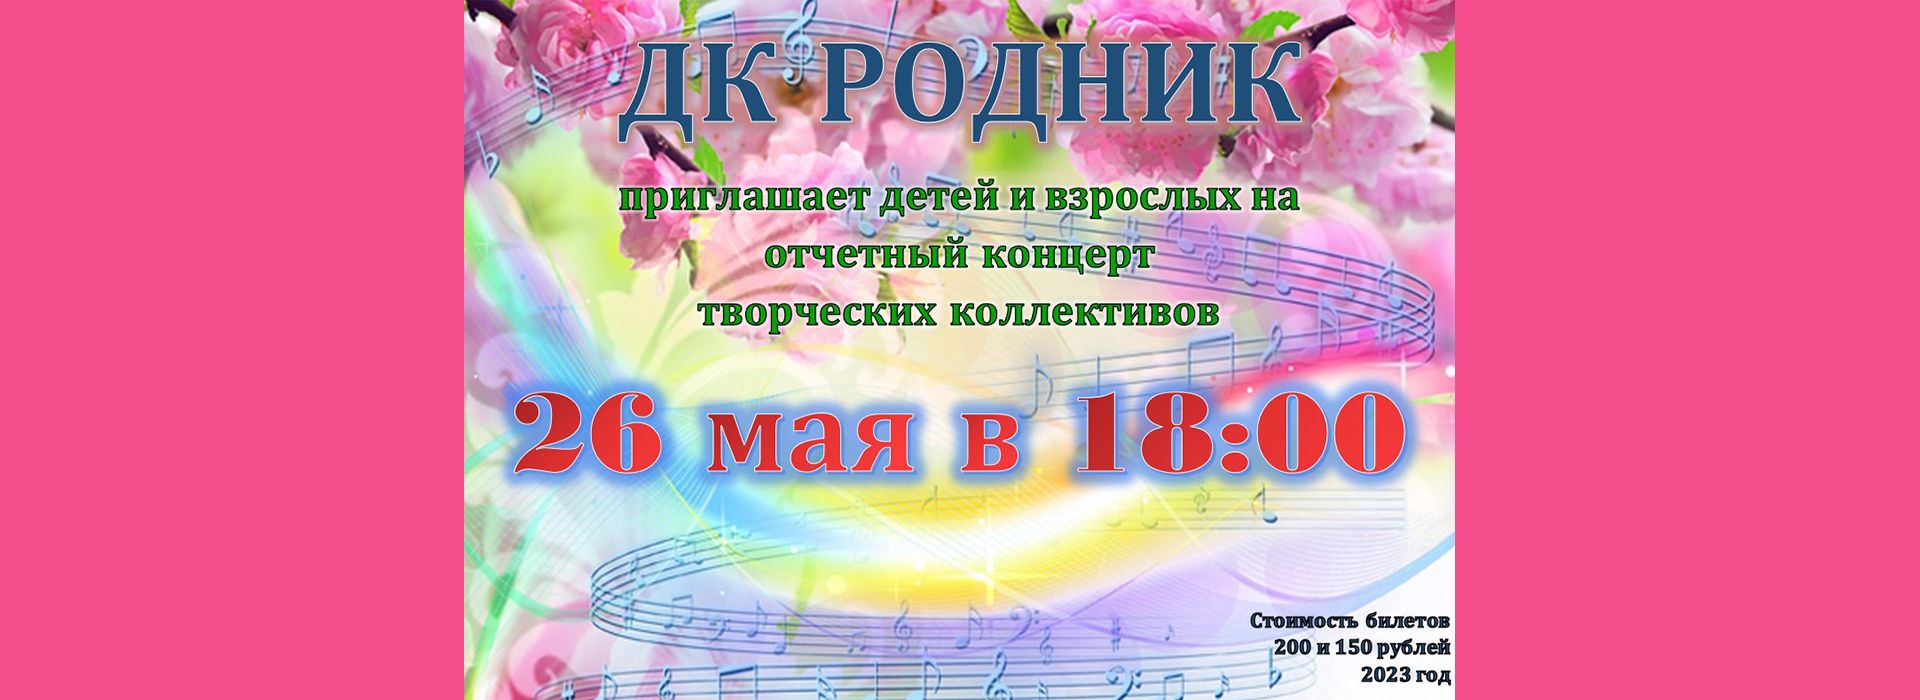 Отчетный концерт творческих коллективов 2023